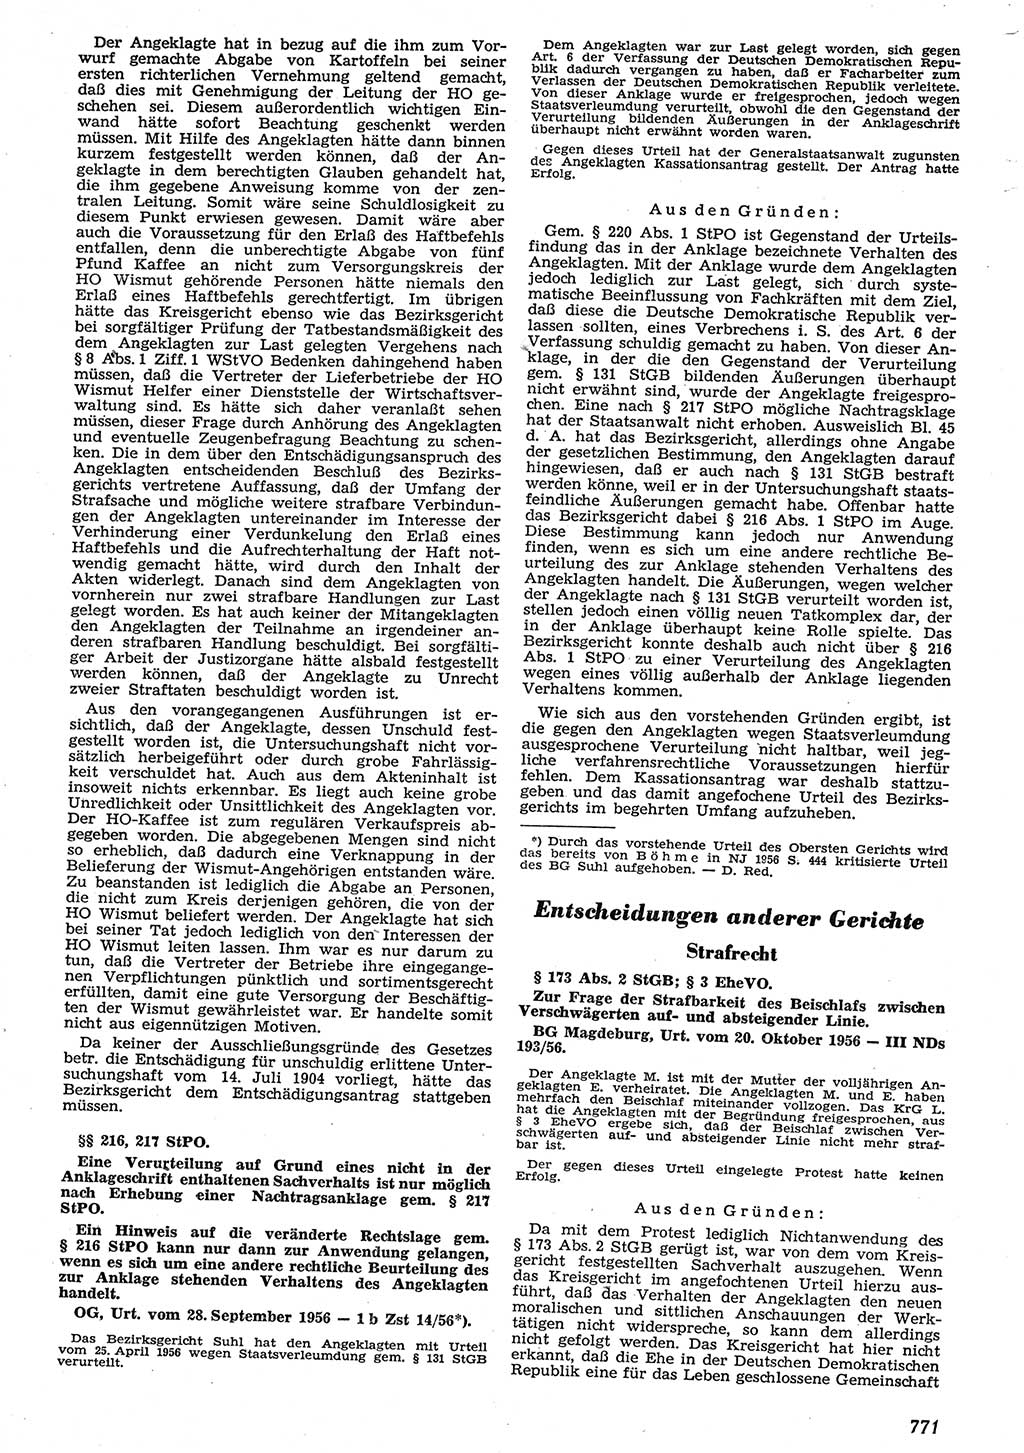 Neue Justiz (NJ), Zeitschrift für Recht und Rechtswissenschaft [Deutsche Demokratische Republik (DDR)], 10. Jahrgang 1956, Seite 771 (NJ DDR 1956, S. 771)